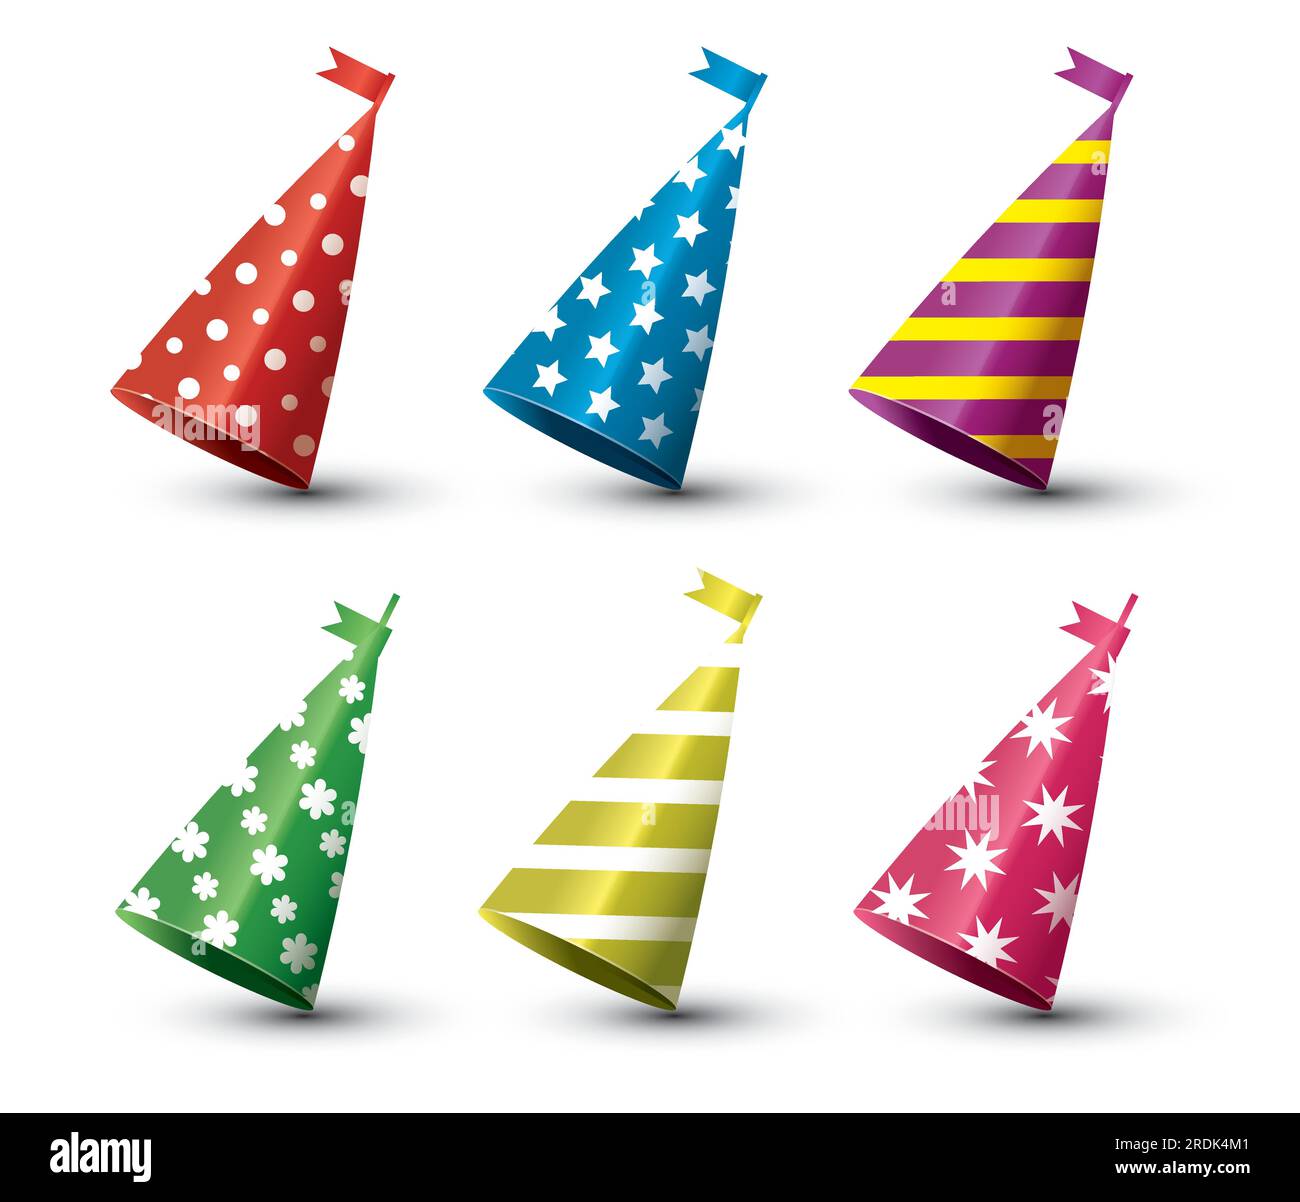 Birthday cap Imágenes vectoriales de stock - Alamy